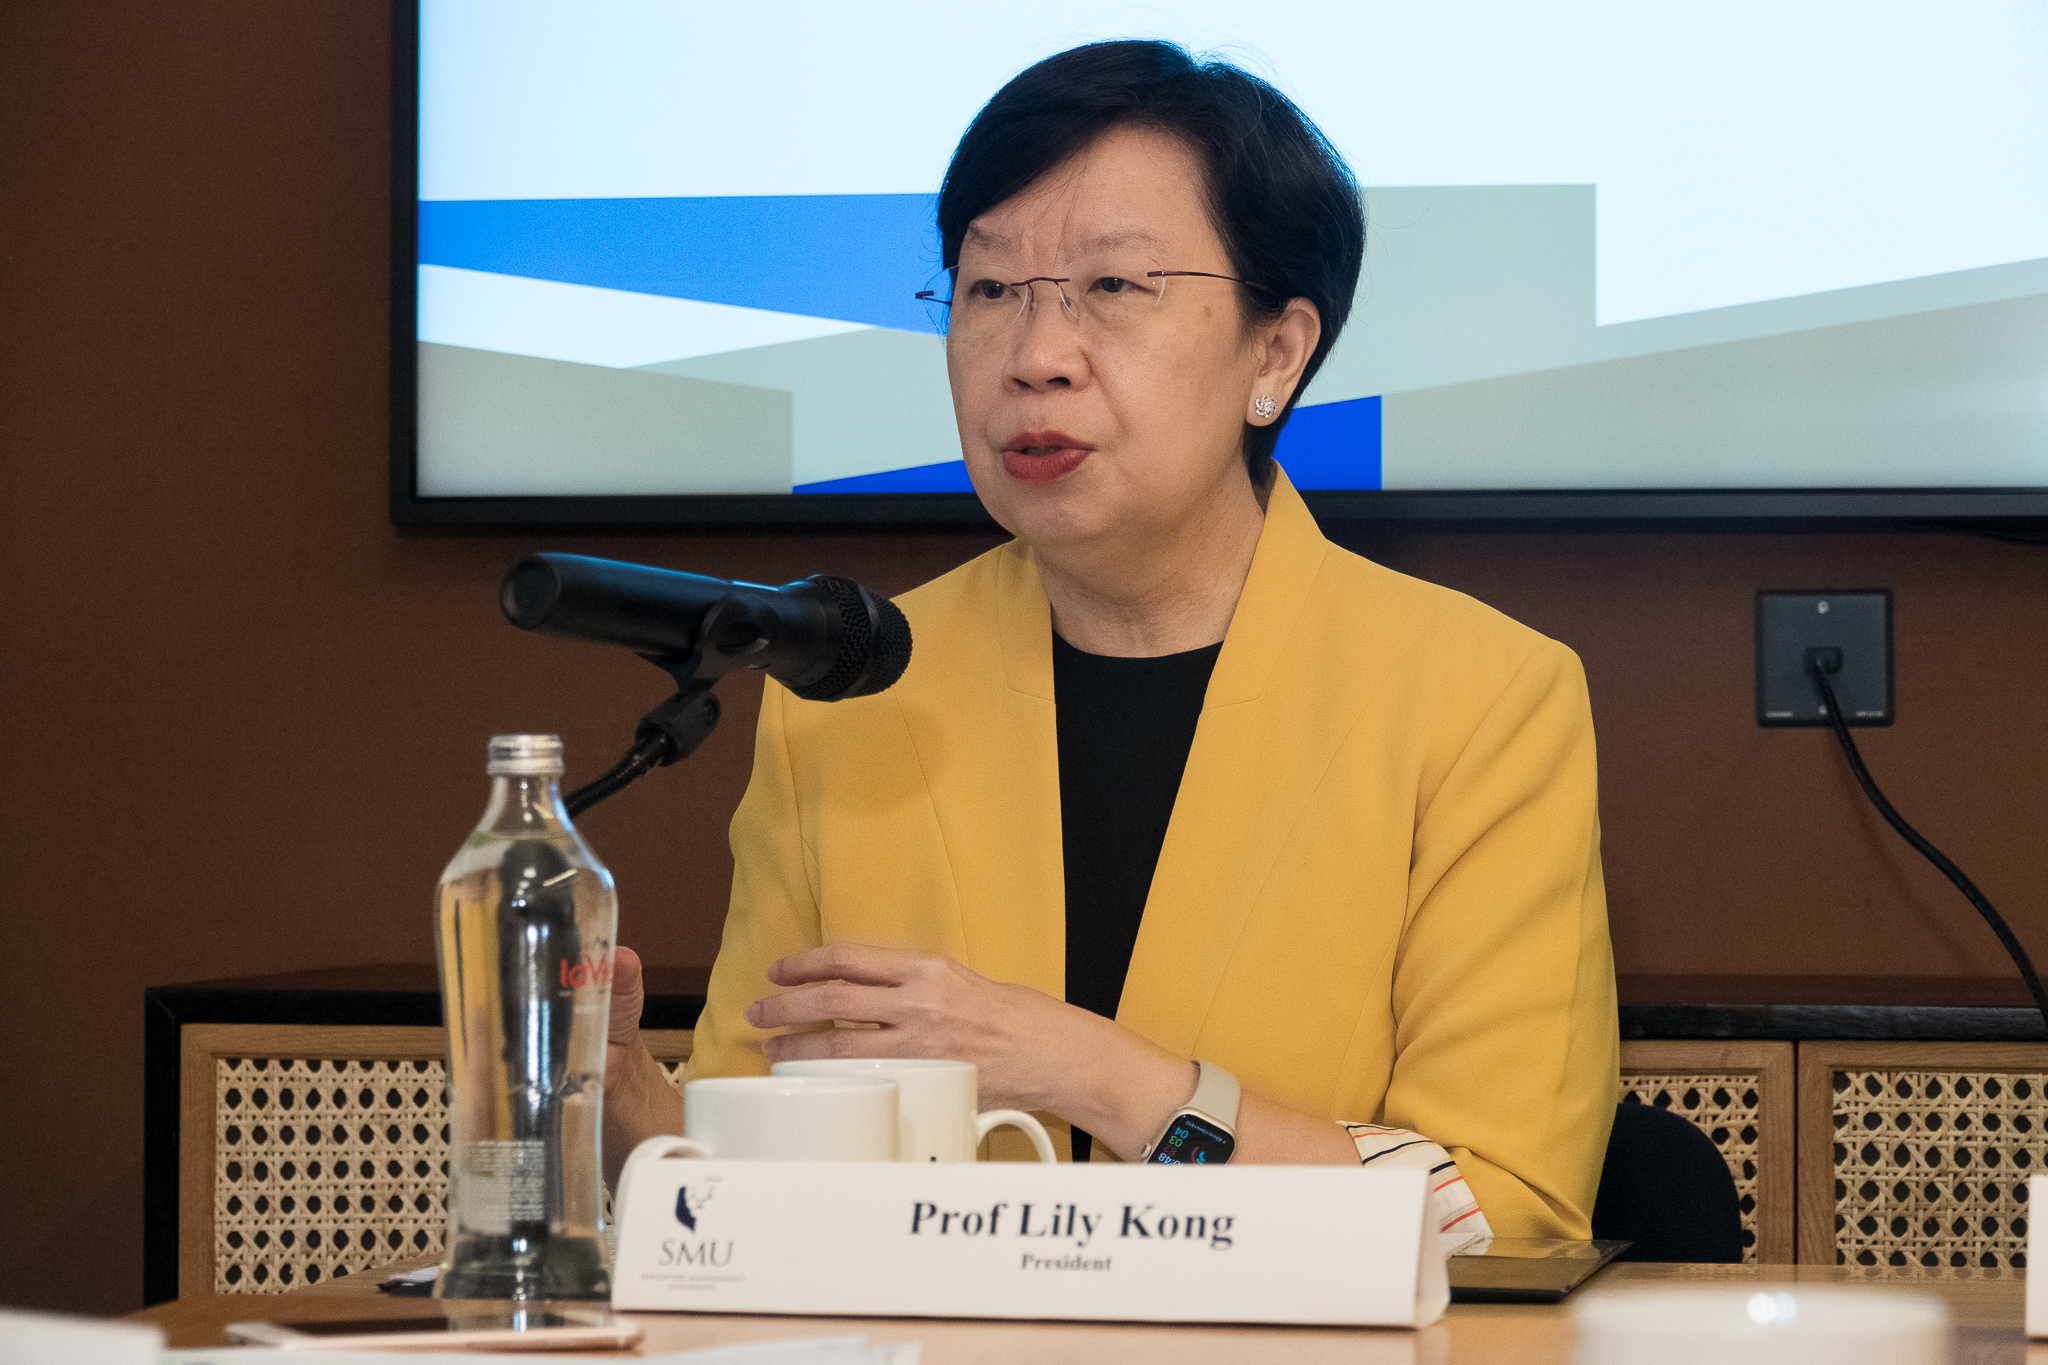 Giáo sư Lily Kong, Chủ tịch ĐH Quản lý Singapore, trong buổi gặp gỡ với báo giới sáng 25.4